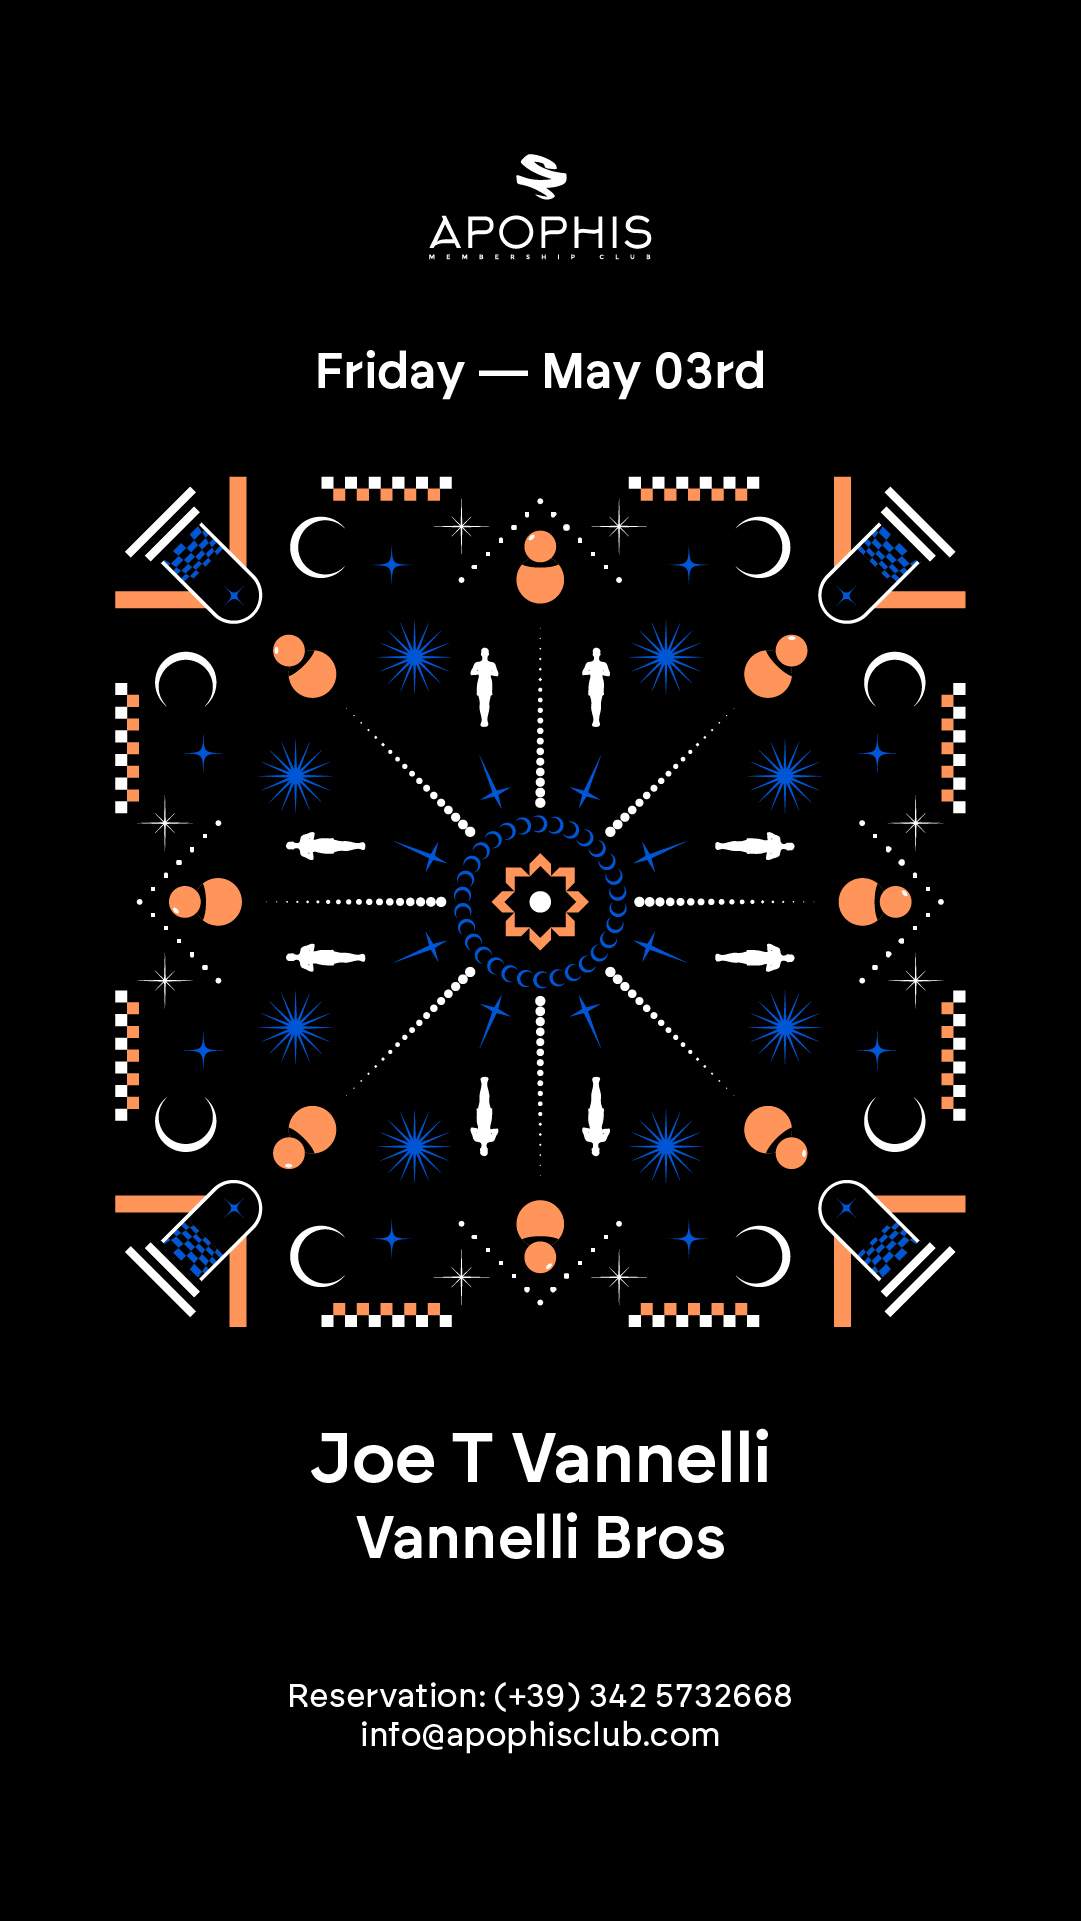 Joe T Vannelli - Página frontal